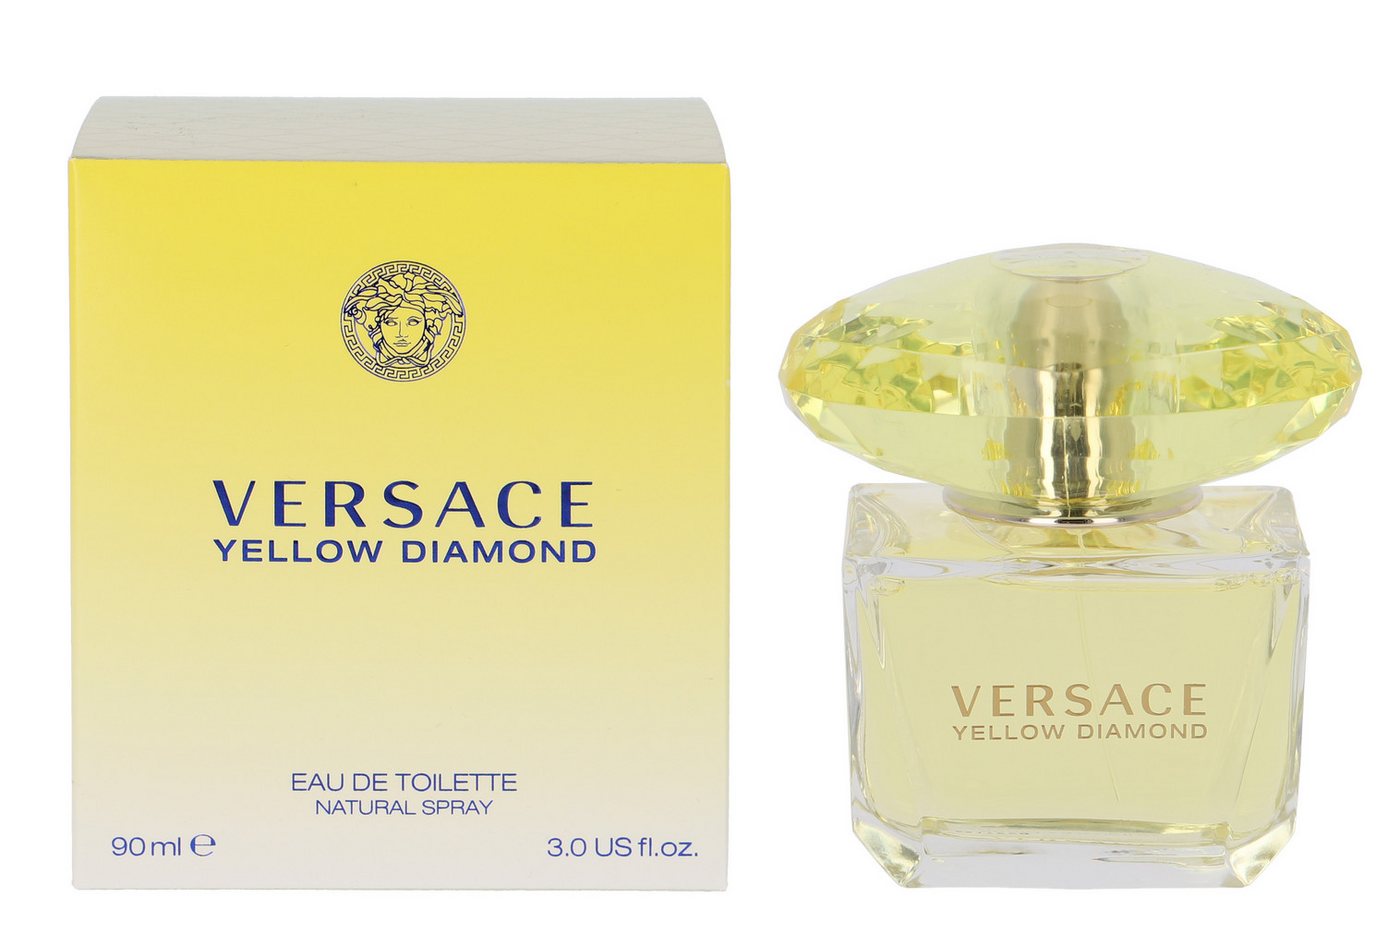 Versace Eau de Toilette Yellow Diamond von Versace